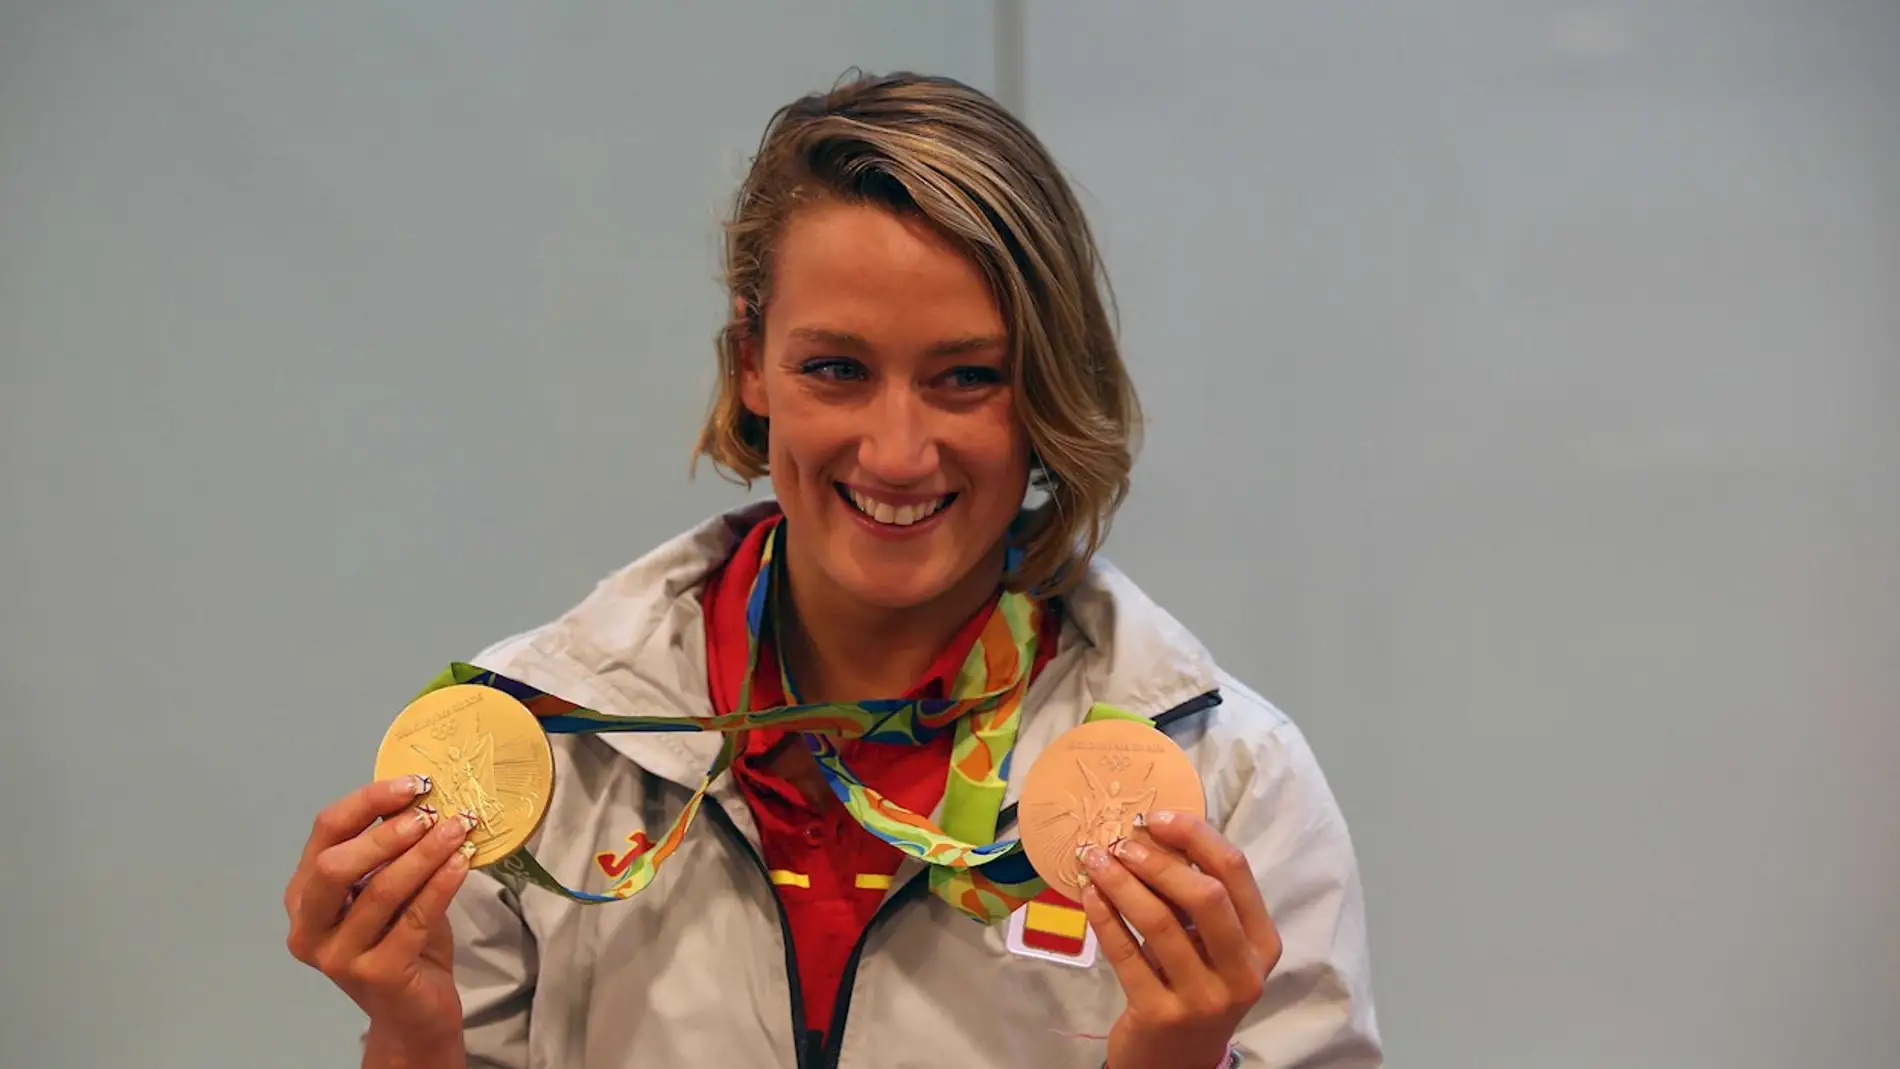 La nadadora Mireia Belmonte posando con sus medallas de oro de Río 2016.